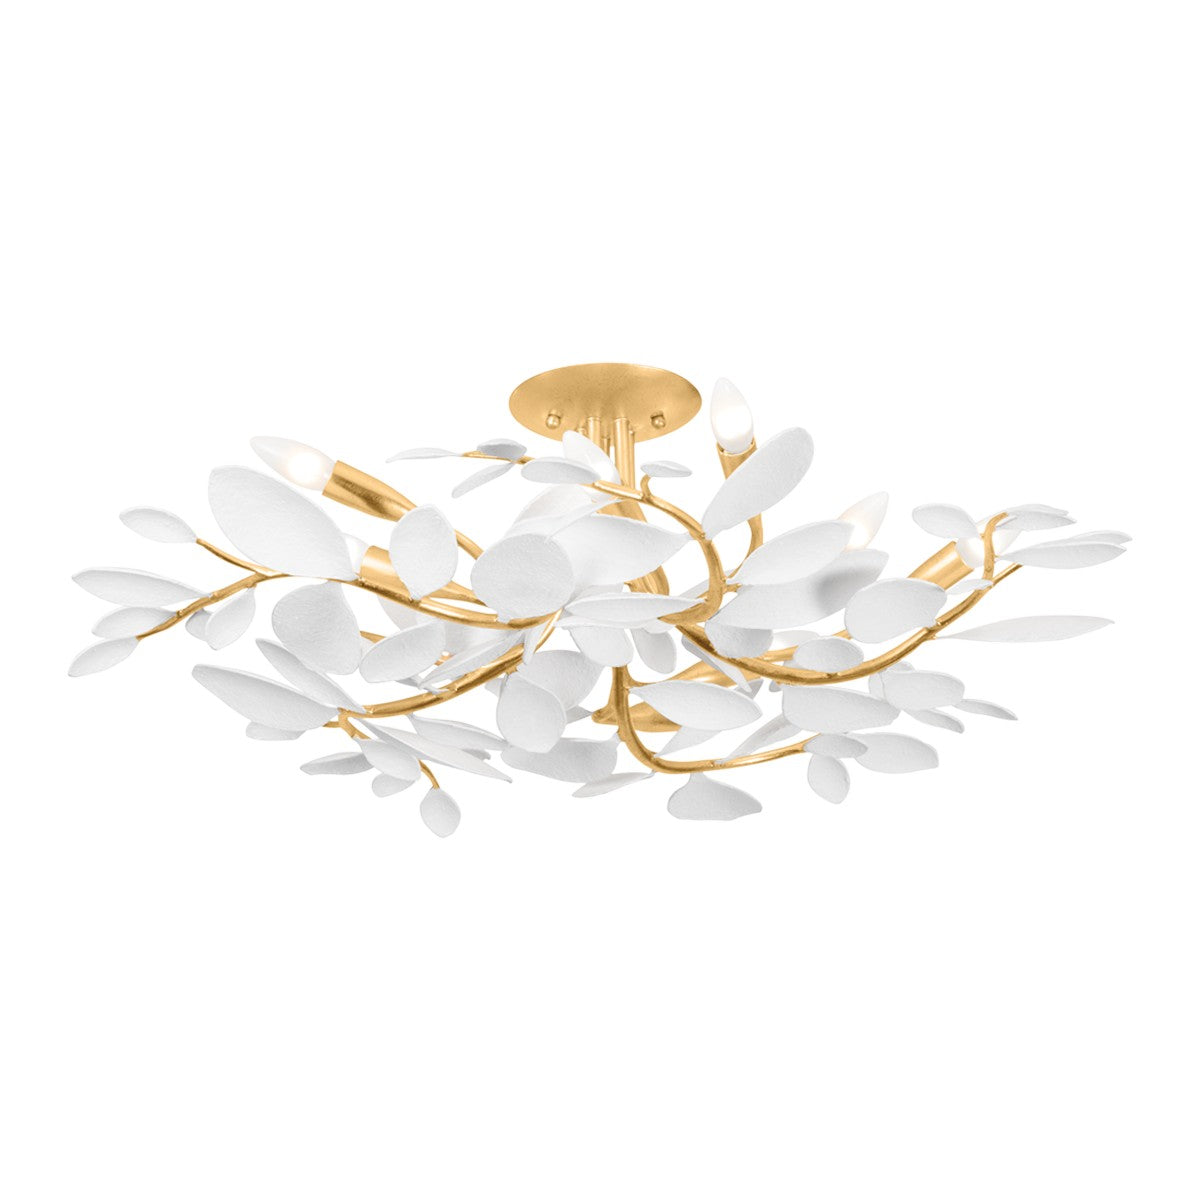 Hudson Valley - Ten Light Semi Flush Mount - Marabec - Vintage Gold Leaf/ White Plaster- Union Lighting Luminaires Decor